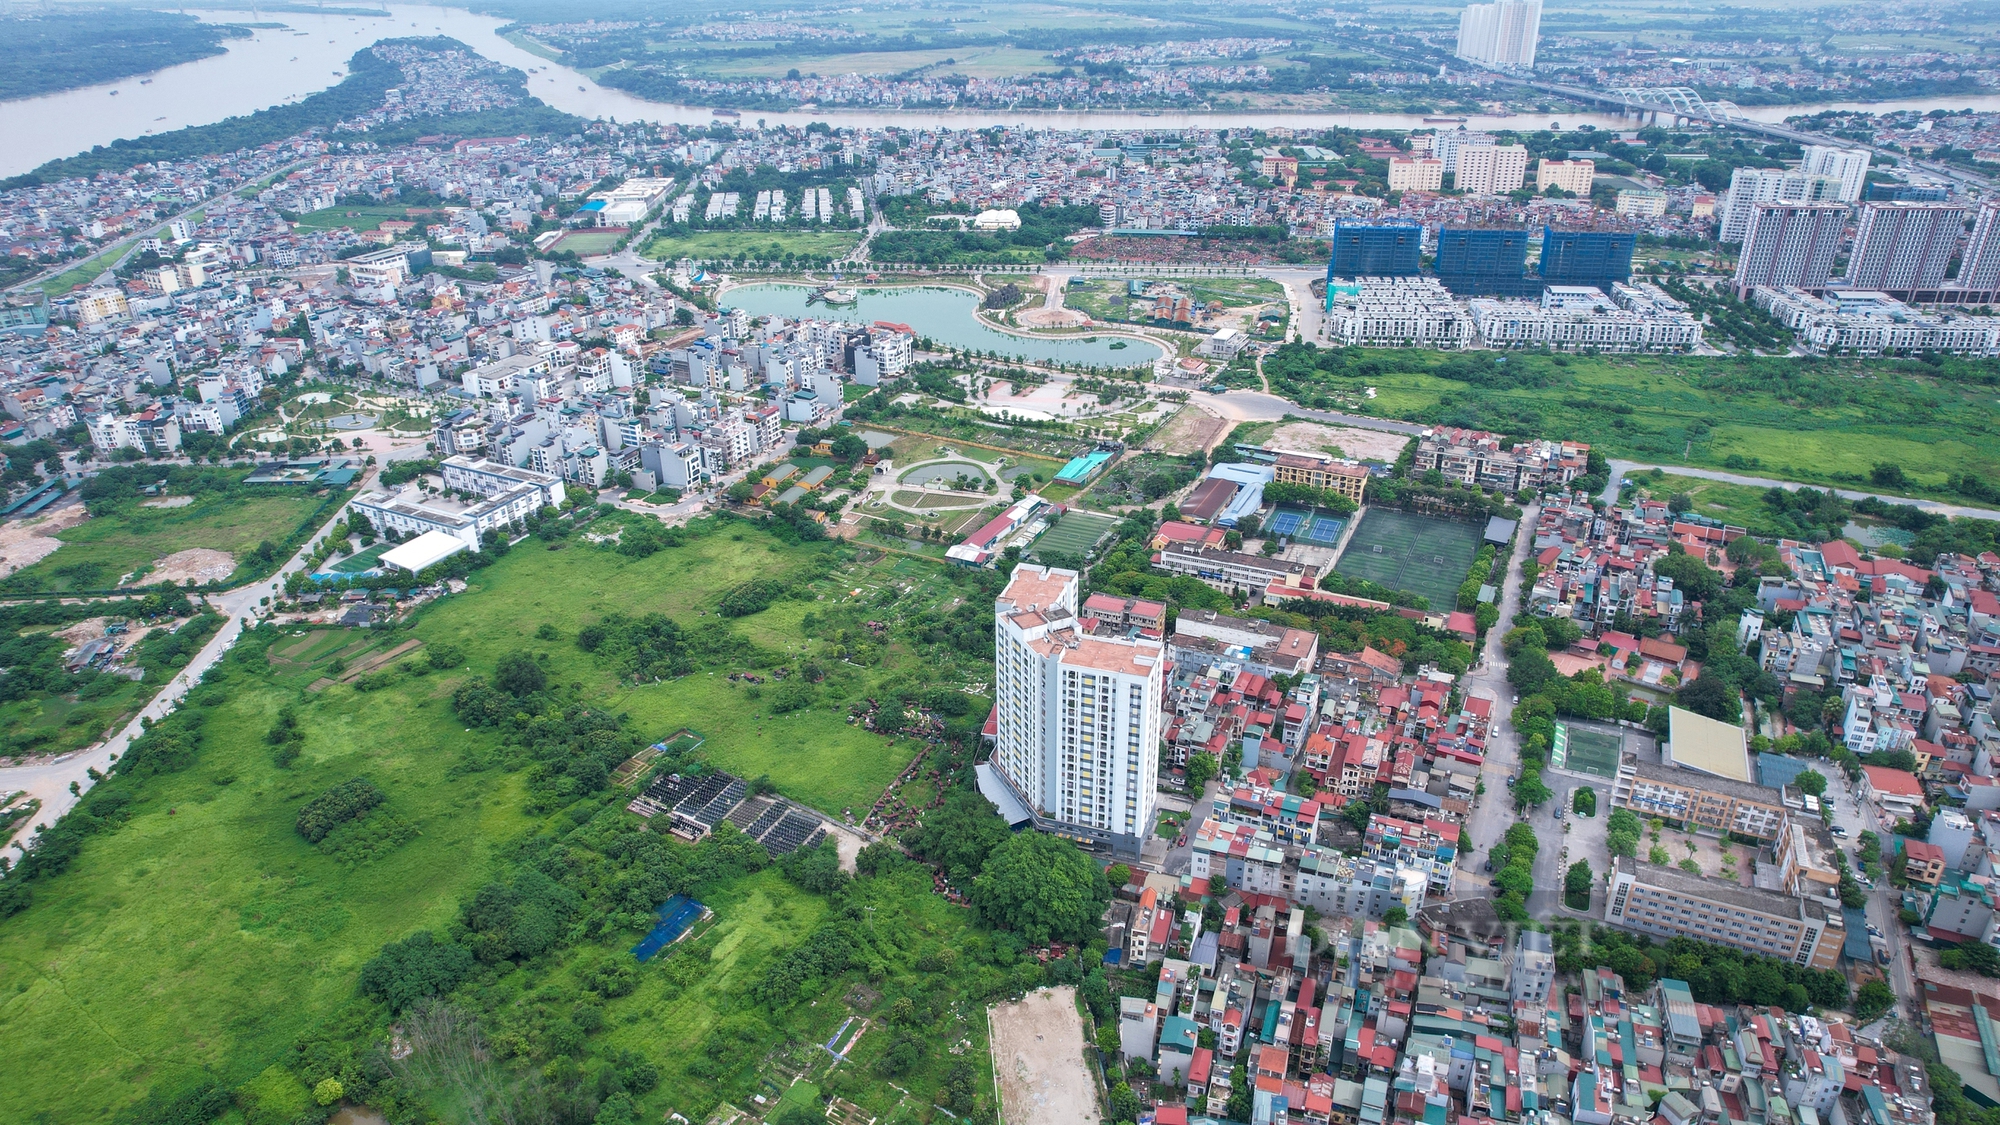 Hình ảnh 2 tuyến đường ở quận Long Biên chuẩn bị được đầu tư mở rộng lên 4 làn xe- Ảnh 8.